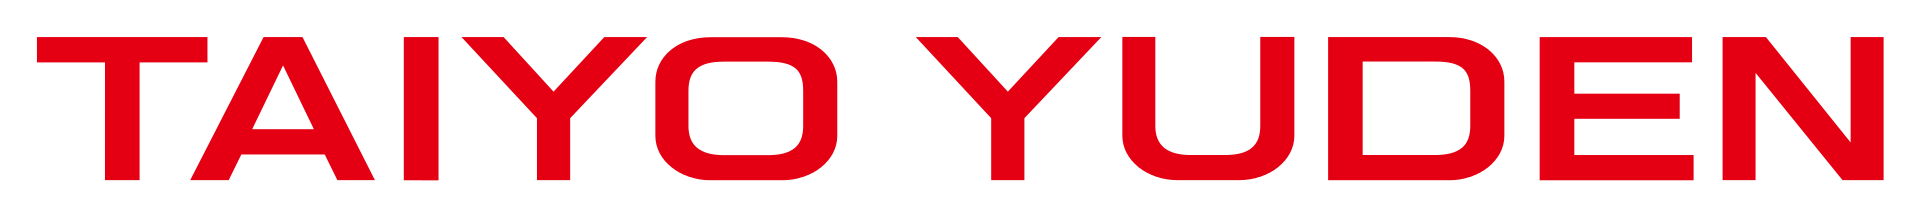 TAIYO YUDEN Brand Logo